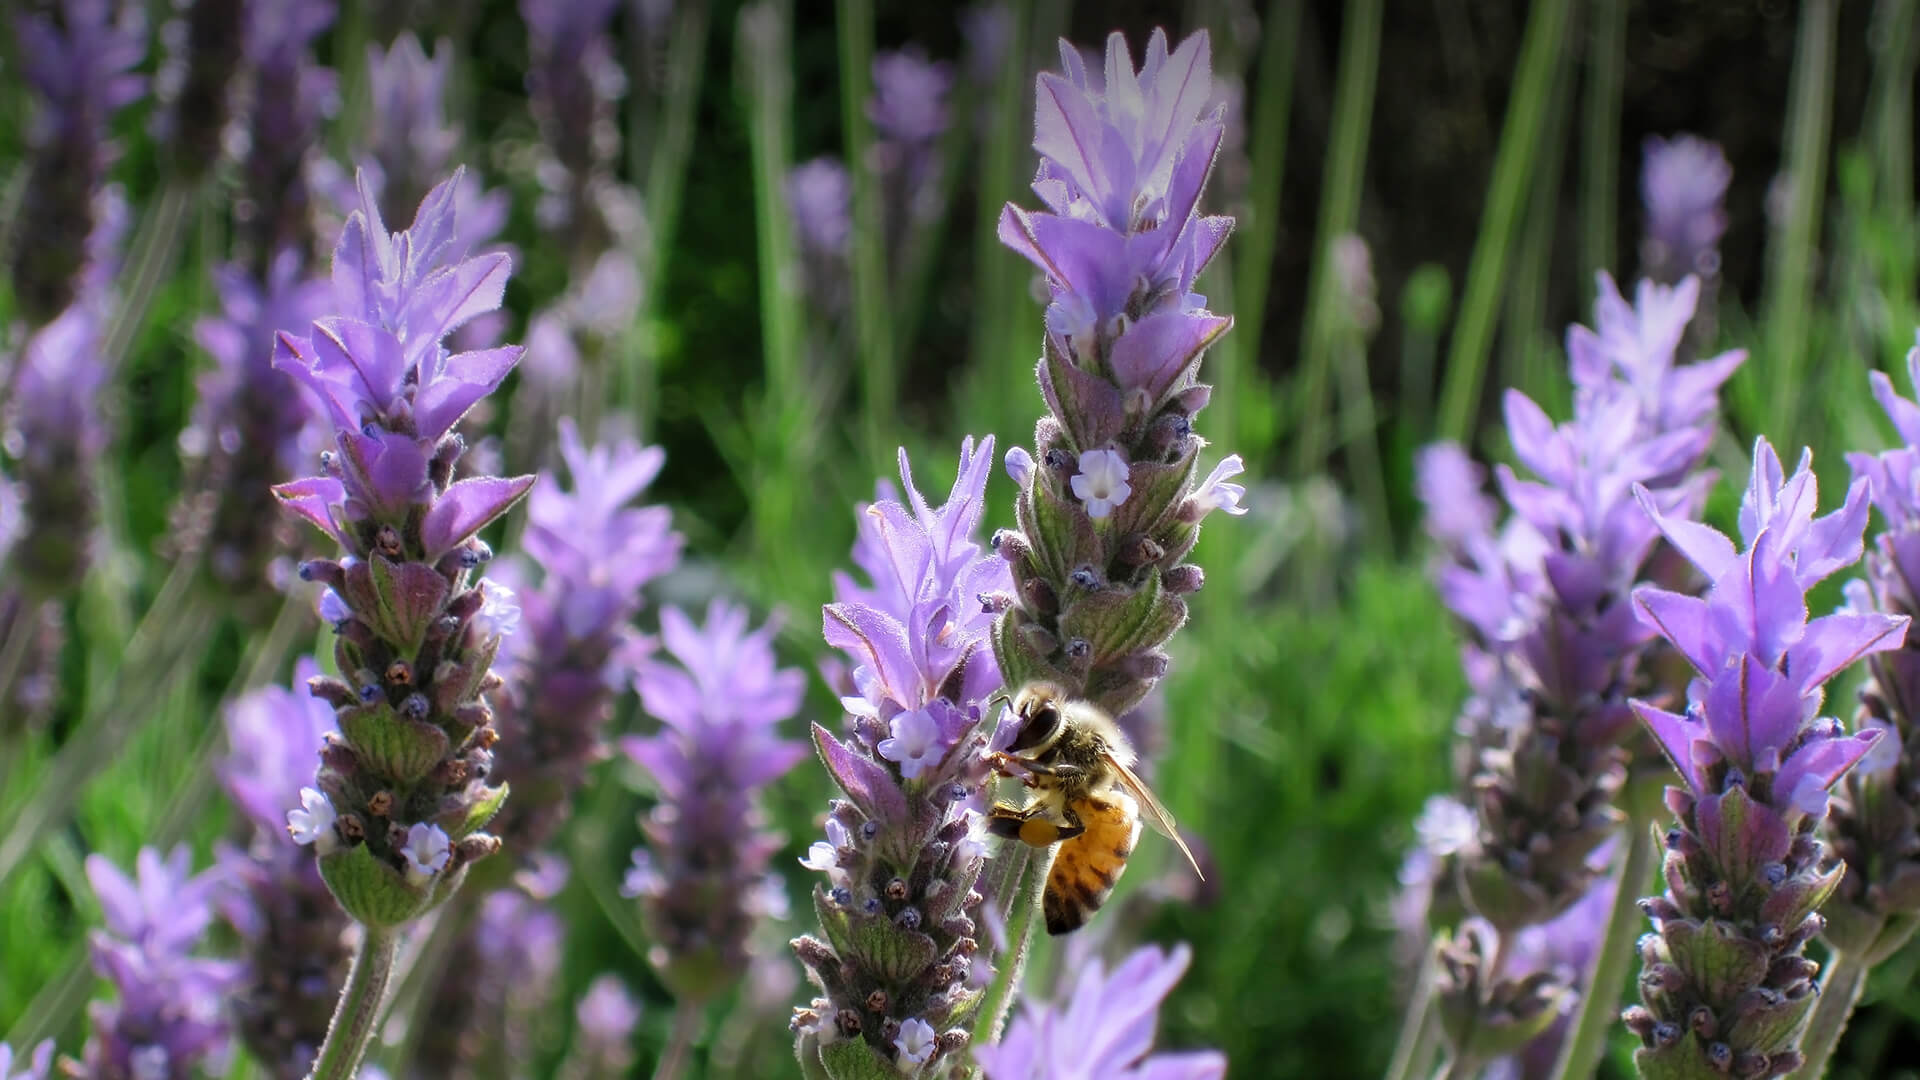 Honeybee gathering pollen from a purple basil flower